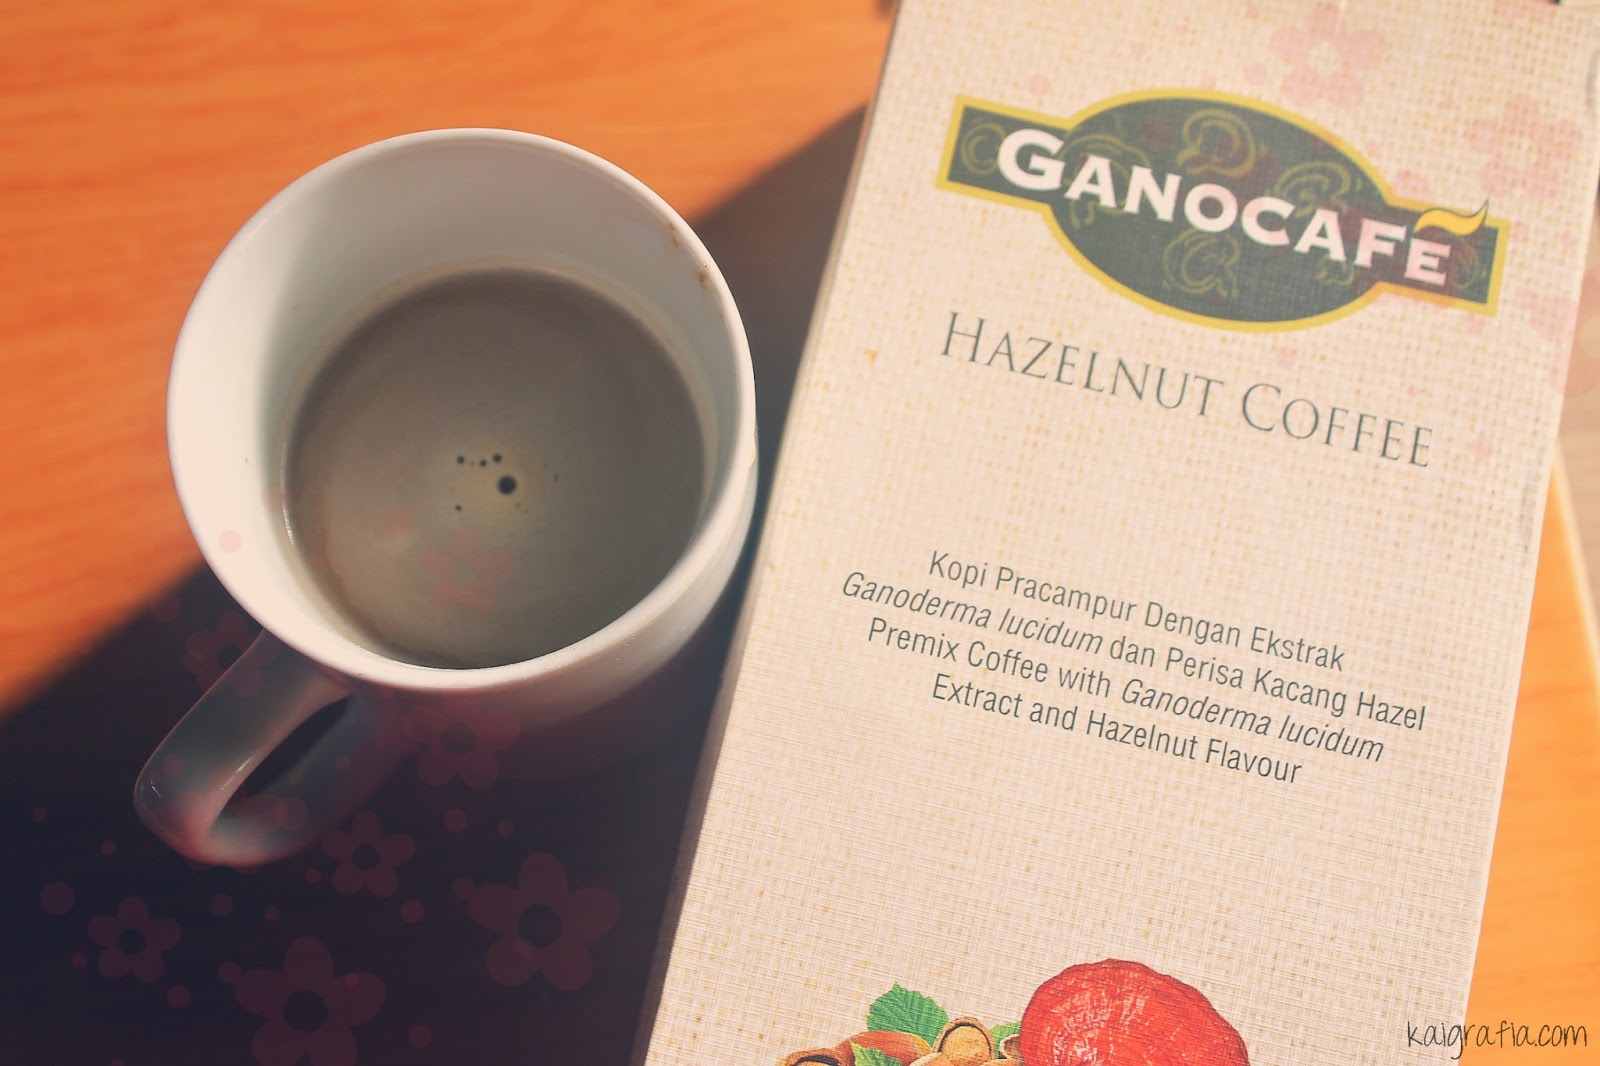 Ganocafe Hazelnut Coffee